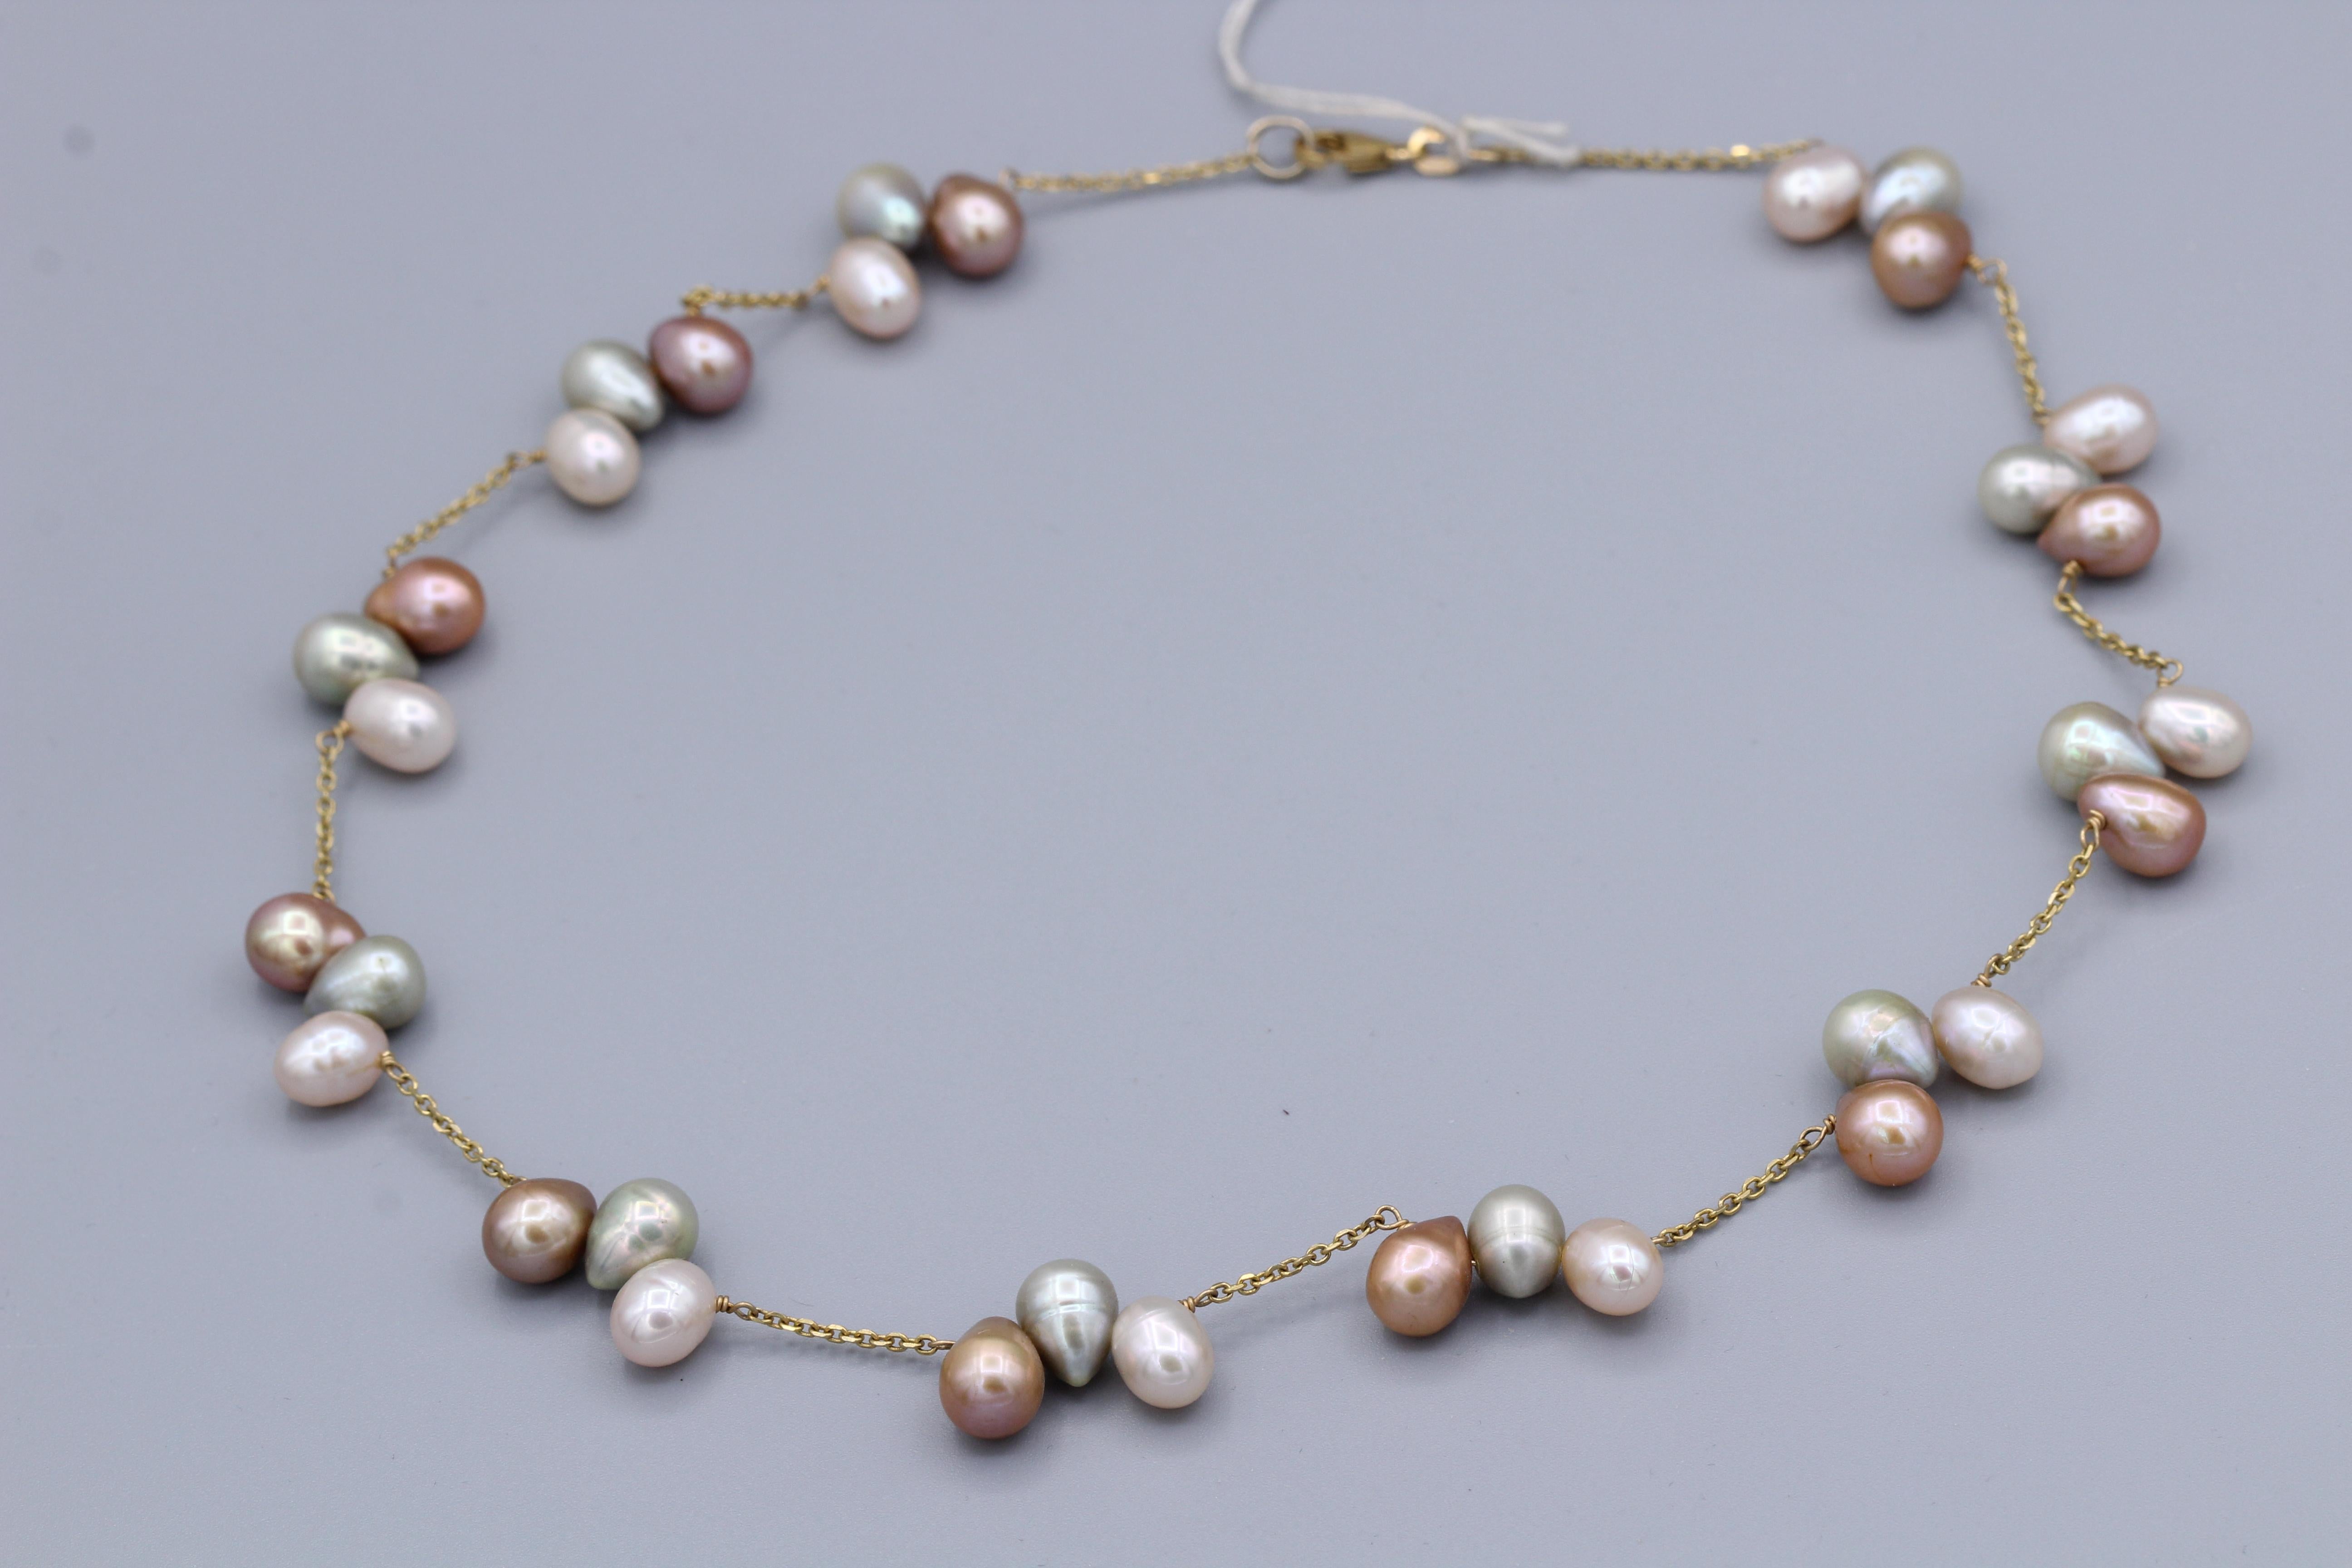 Elegante Perlenkette mit mehrfarbigen Perlen
14k Gelbgold Kette Draht Stil
Länge  16.5 ' Zoll
Süßwasser multi Farben ca. 6,0 mm
Hummerschloss 
Gesamtgewicht 22,0 Gramm
